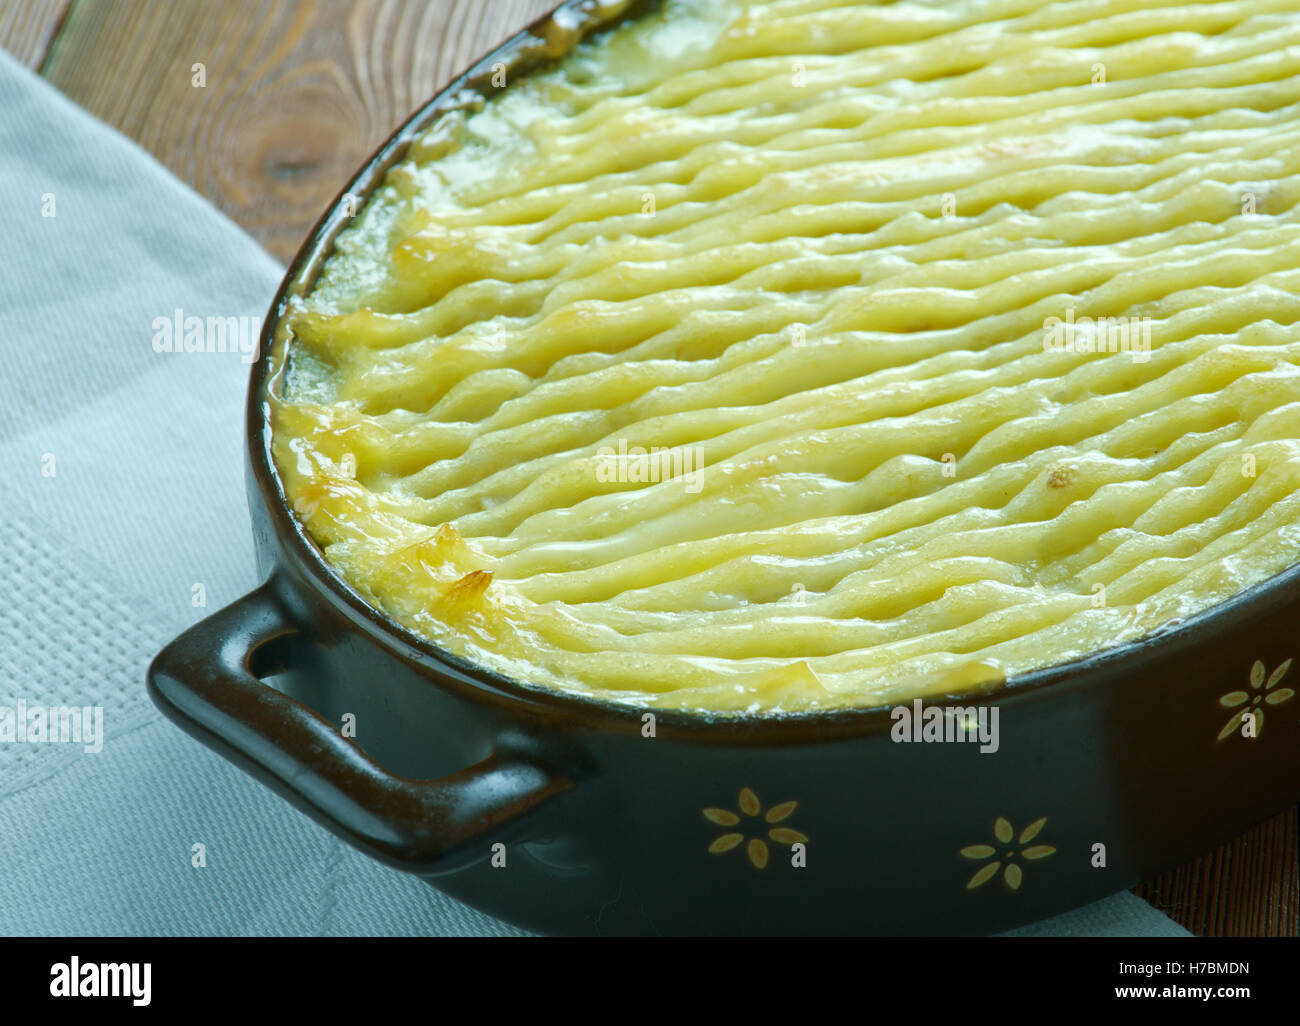 Brandade de morue emulsione di baccalà e olio di oliva consumato in inverno con pane o patate. Foto Stock